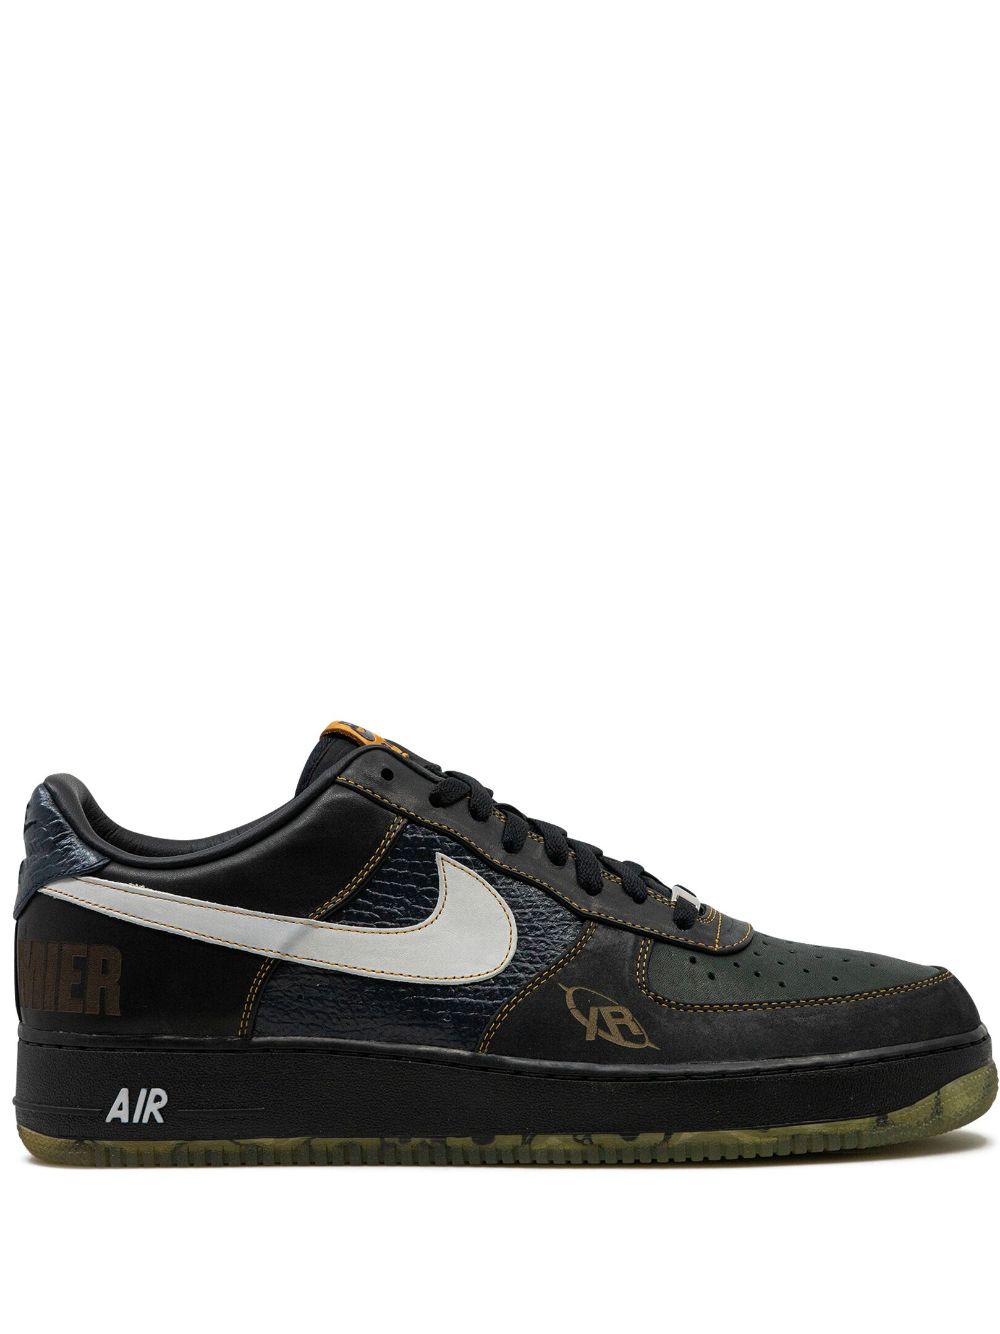 Nike Air Force 1 Low “DJ Premier” sneakers Black